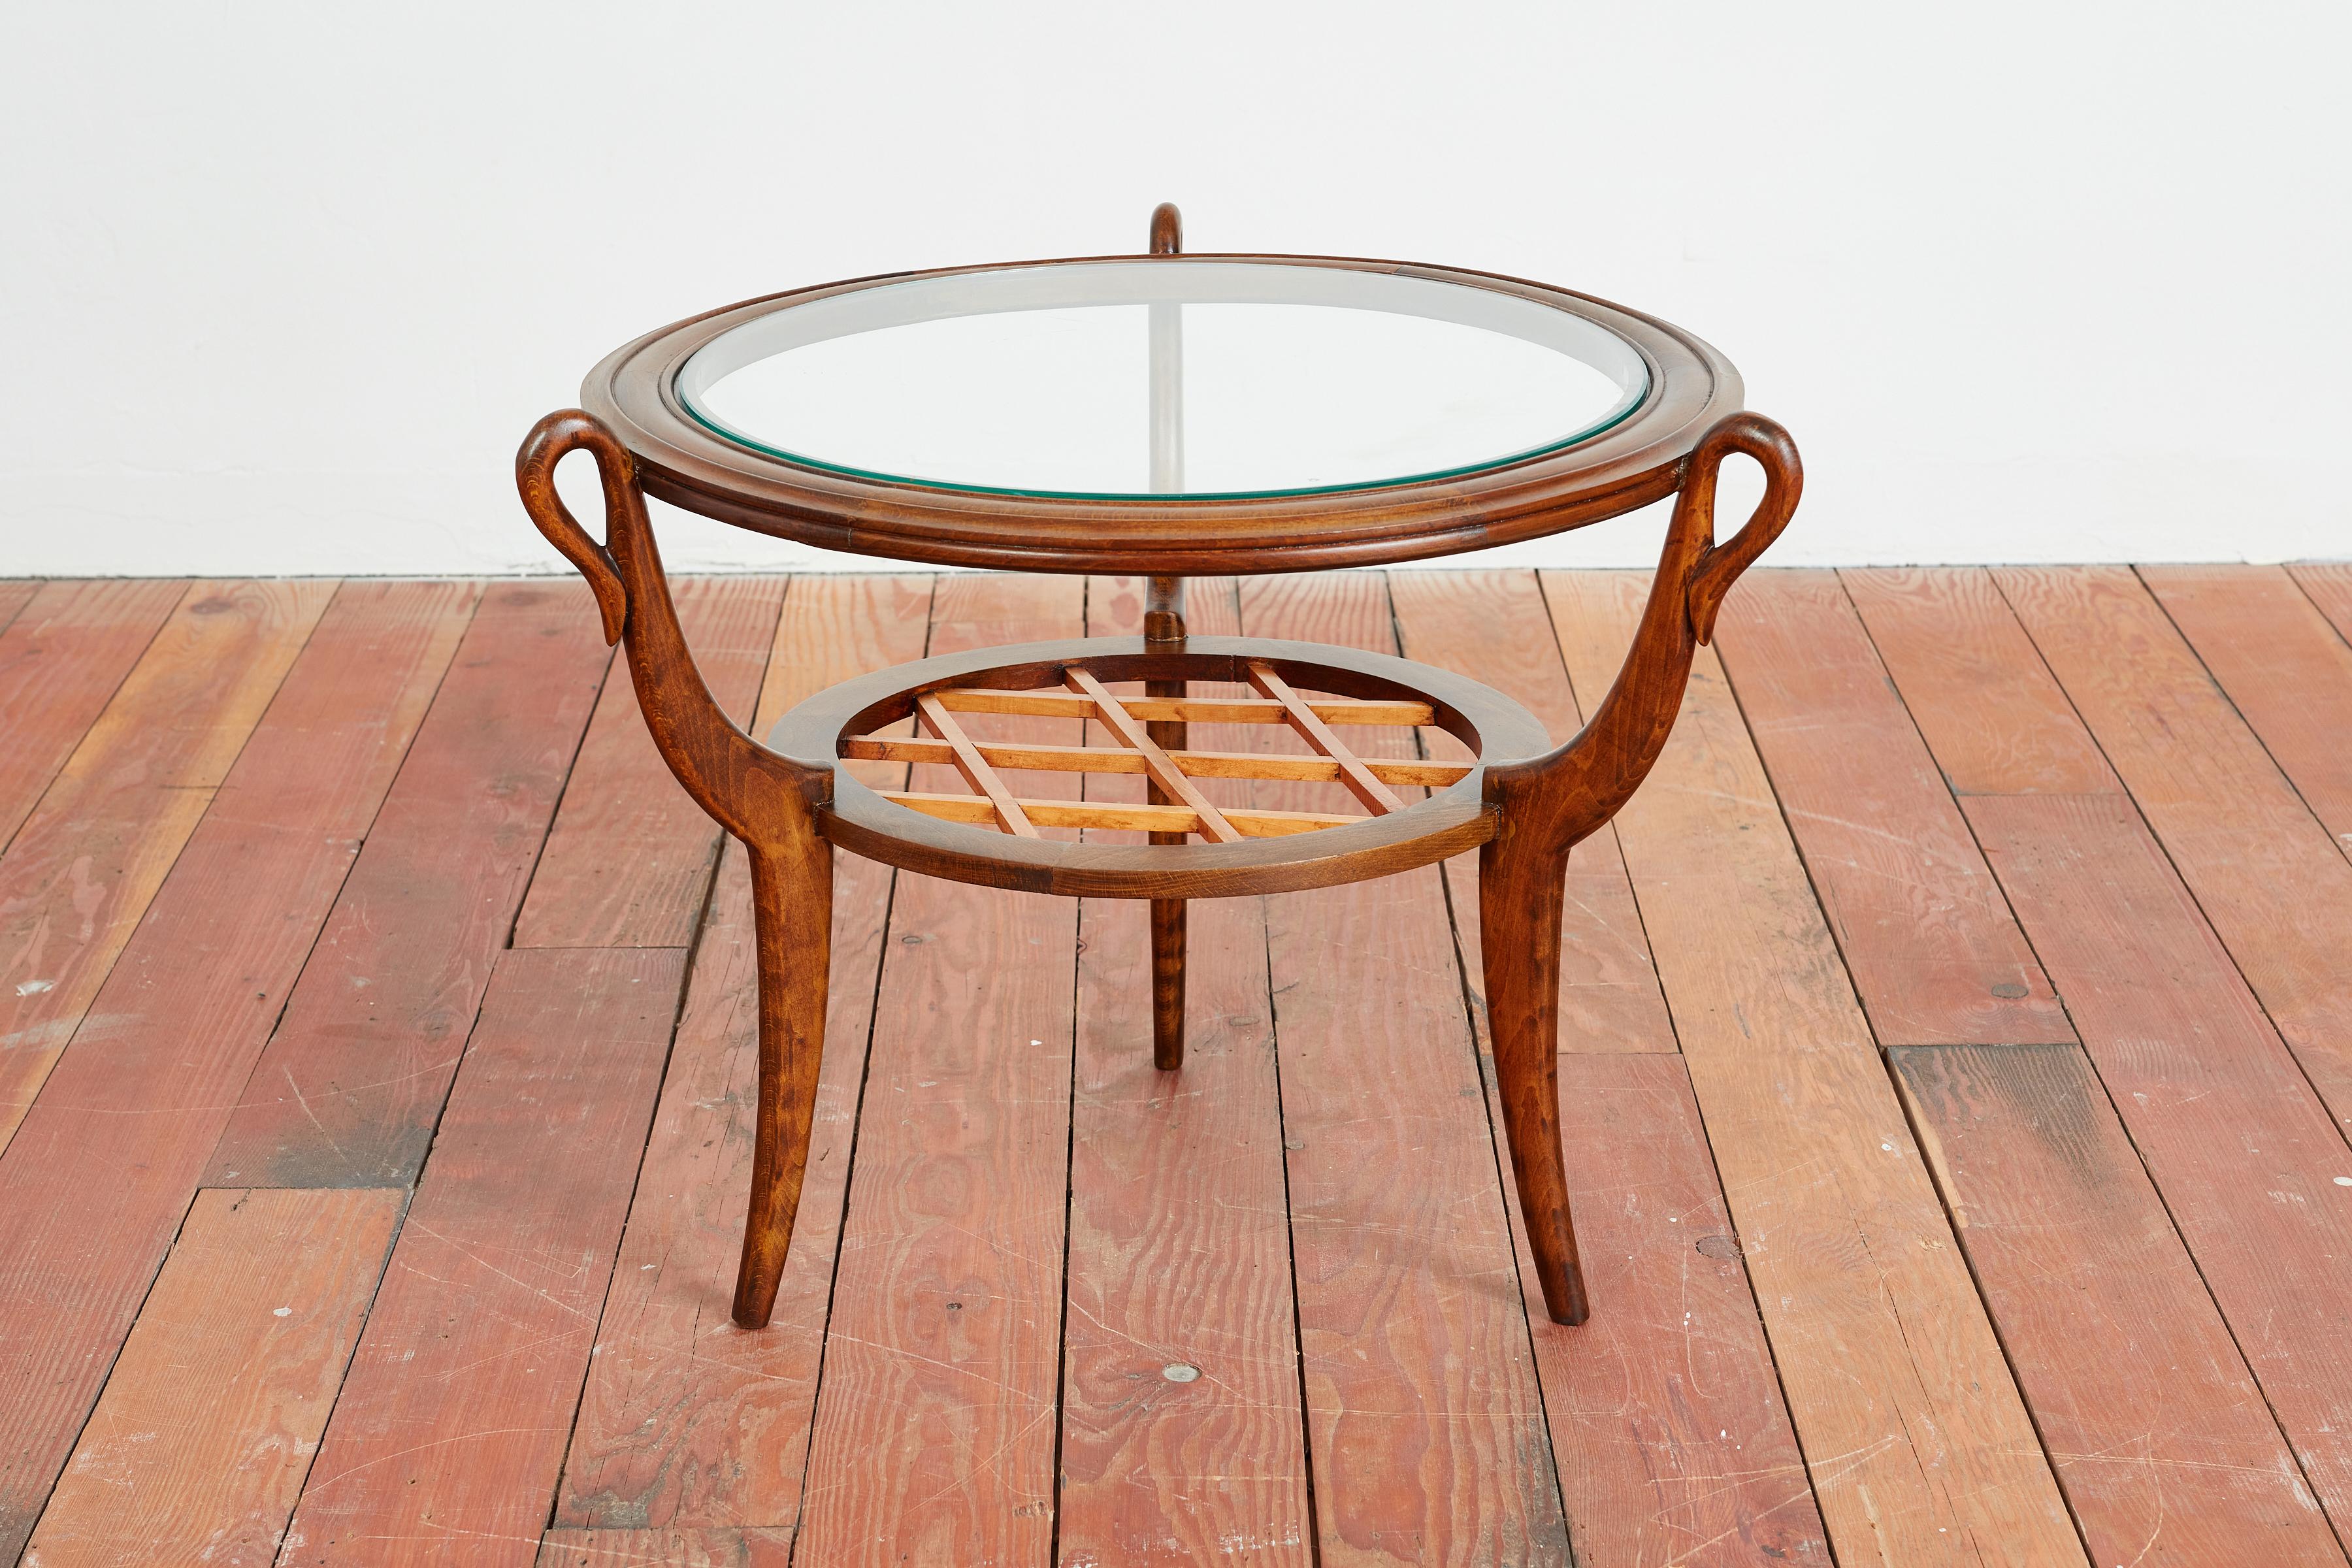 Eleganter Beistelltisch von Paolo Buffa - 
Italien, ca. 1940er Jahre 
Hergestellt aus Nussbaumholz mit geflochtener Holzablage, anmutig geschwungenen Beinen und einer Glasplatte mit Intarsien. 
Kreisförmige Looping-Details an der Stelle, wo die